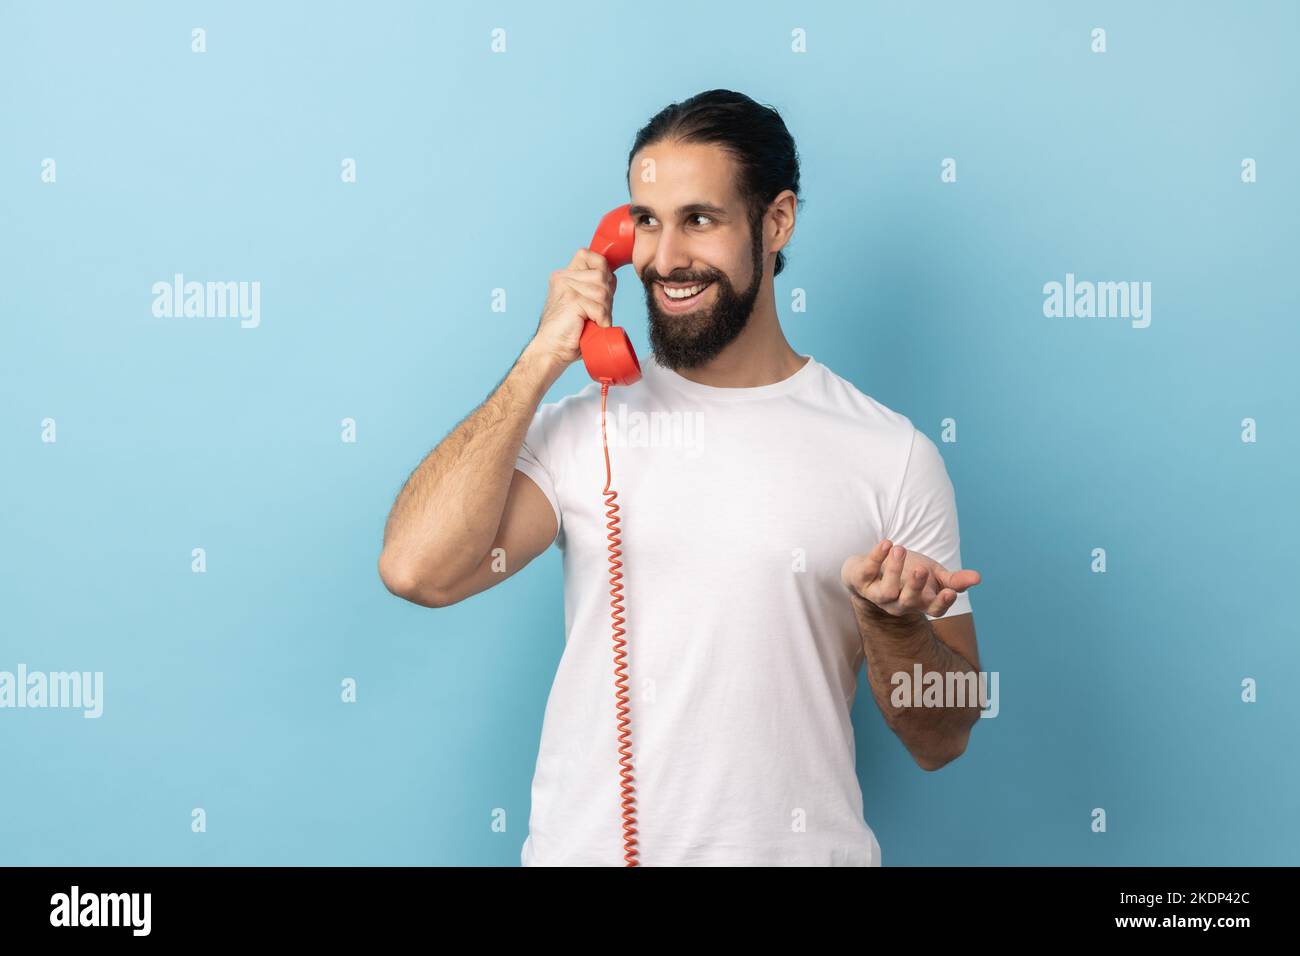 Porträt eines positiven Mannes mit Bart in weißem T-Shirt, der auf einem roten Retro-Telefon spricht, angenehme Gespräche führt, mit einem Lächeln wegschaut Innenaufnahme des Studios isoliert auf blauem Hintergrund. Stockfoto